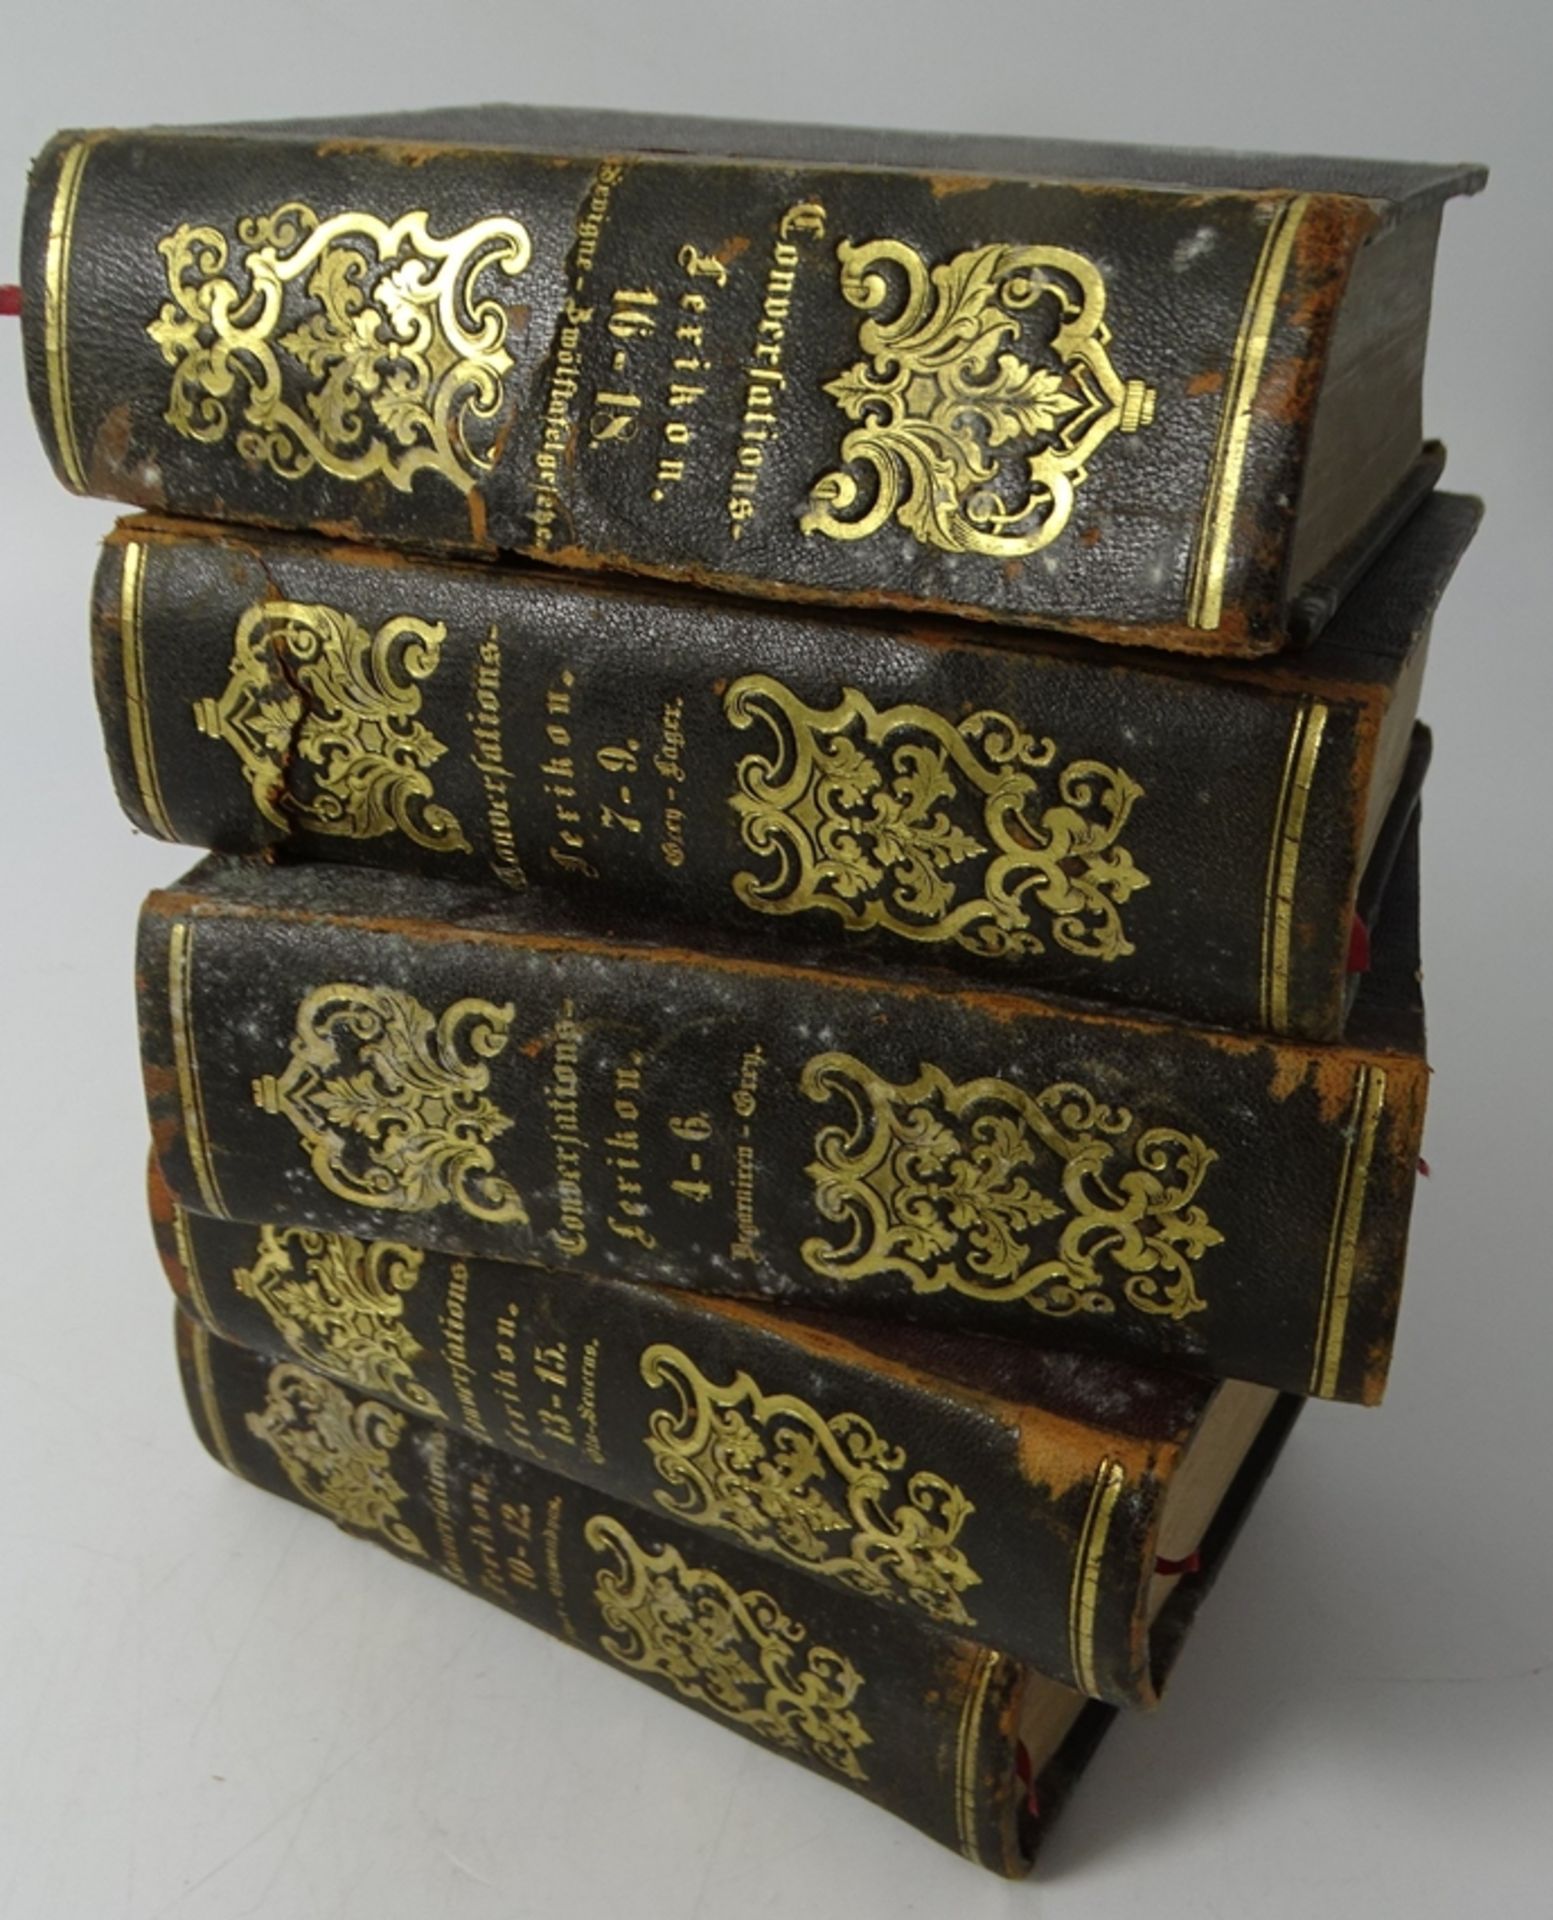 5 Bände Conservations-Lexicon,  1844, Lederrücken tw. beschädigt, 13,5x9 cm - Bild 2 aus 9